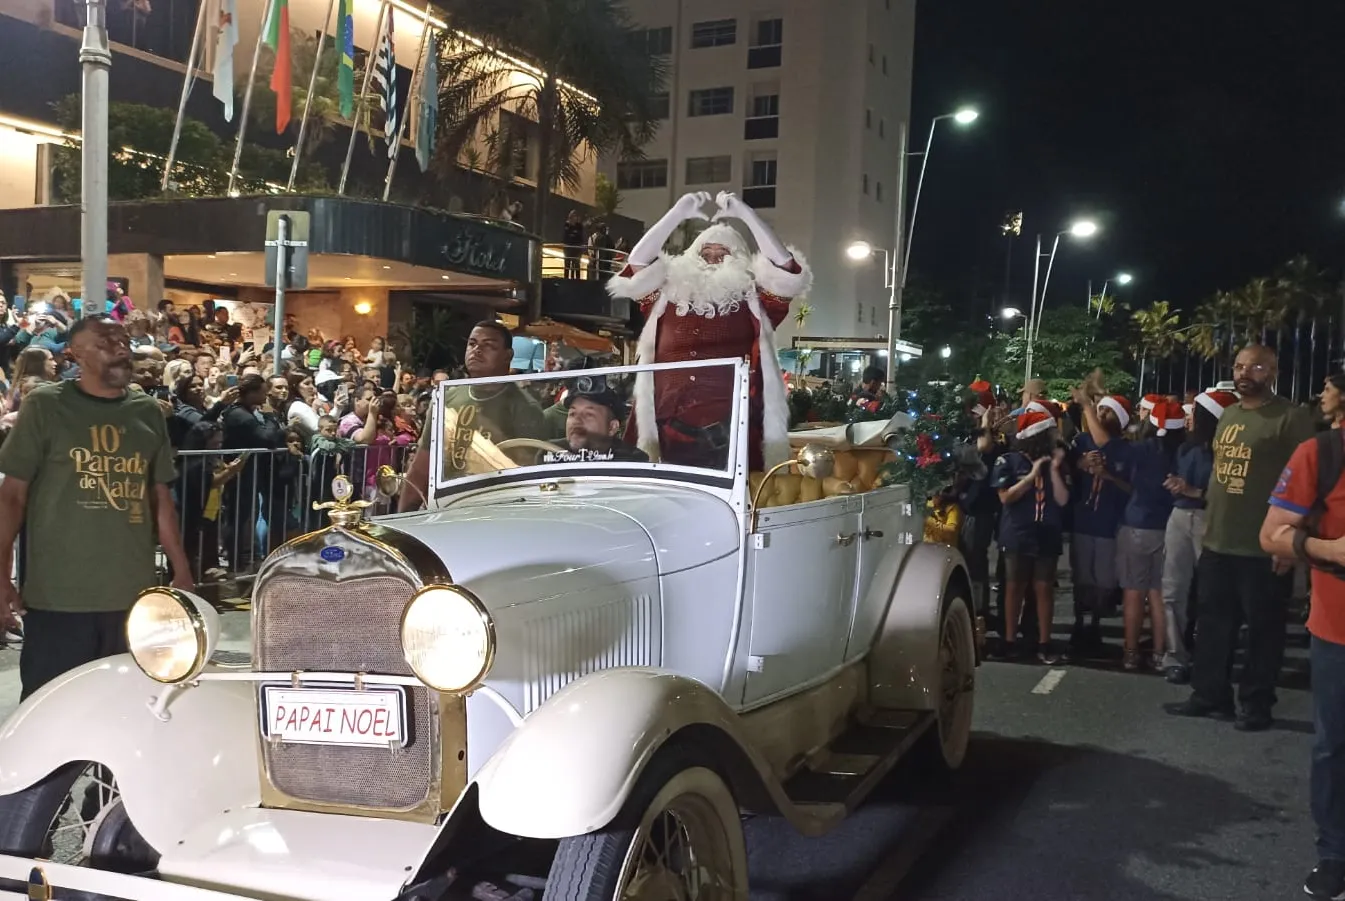 Parada de Natal atrai centenas de pessoas na noite deste domingo ao  Gonzaga, em Santos; VÍDEO